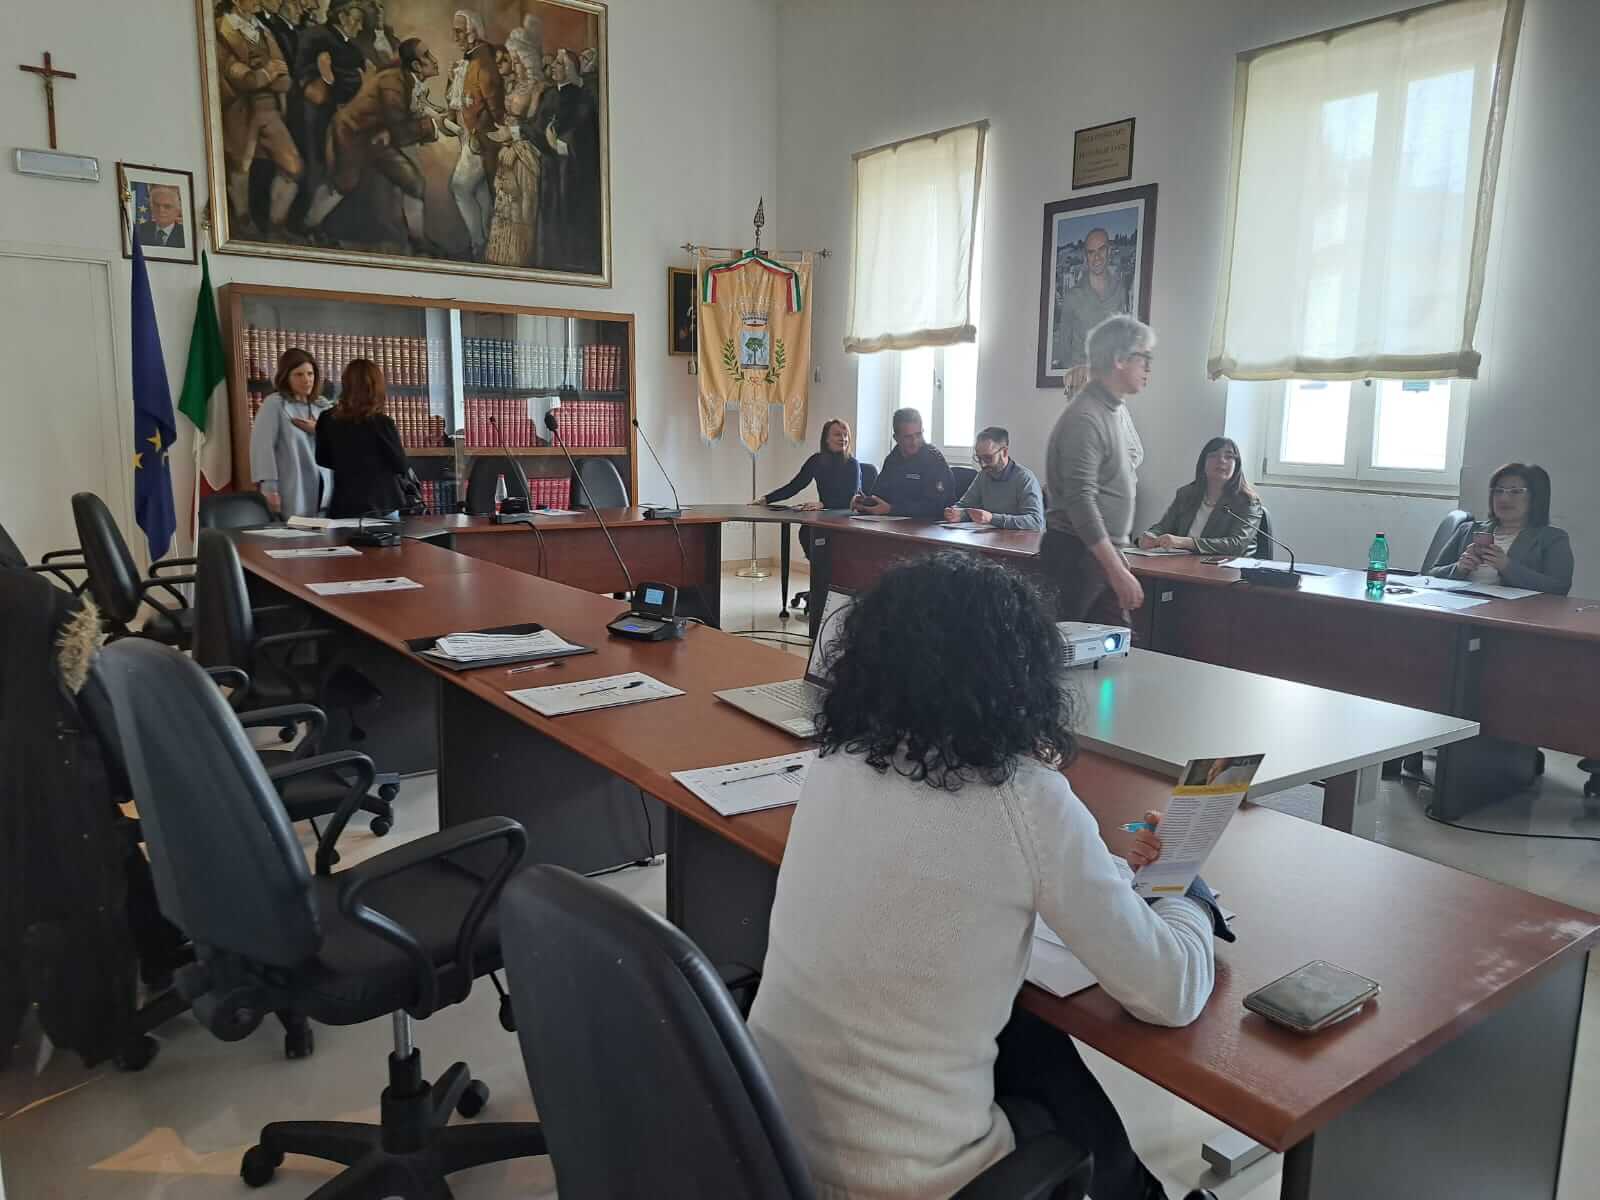 L'associazione Alzheimer Alberobello durante il primo incontro dell'Atelier Formativo relativo al Progetto CAP 70011 nella sala consiliare del comune di Alberobello.